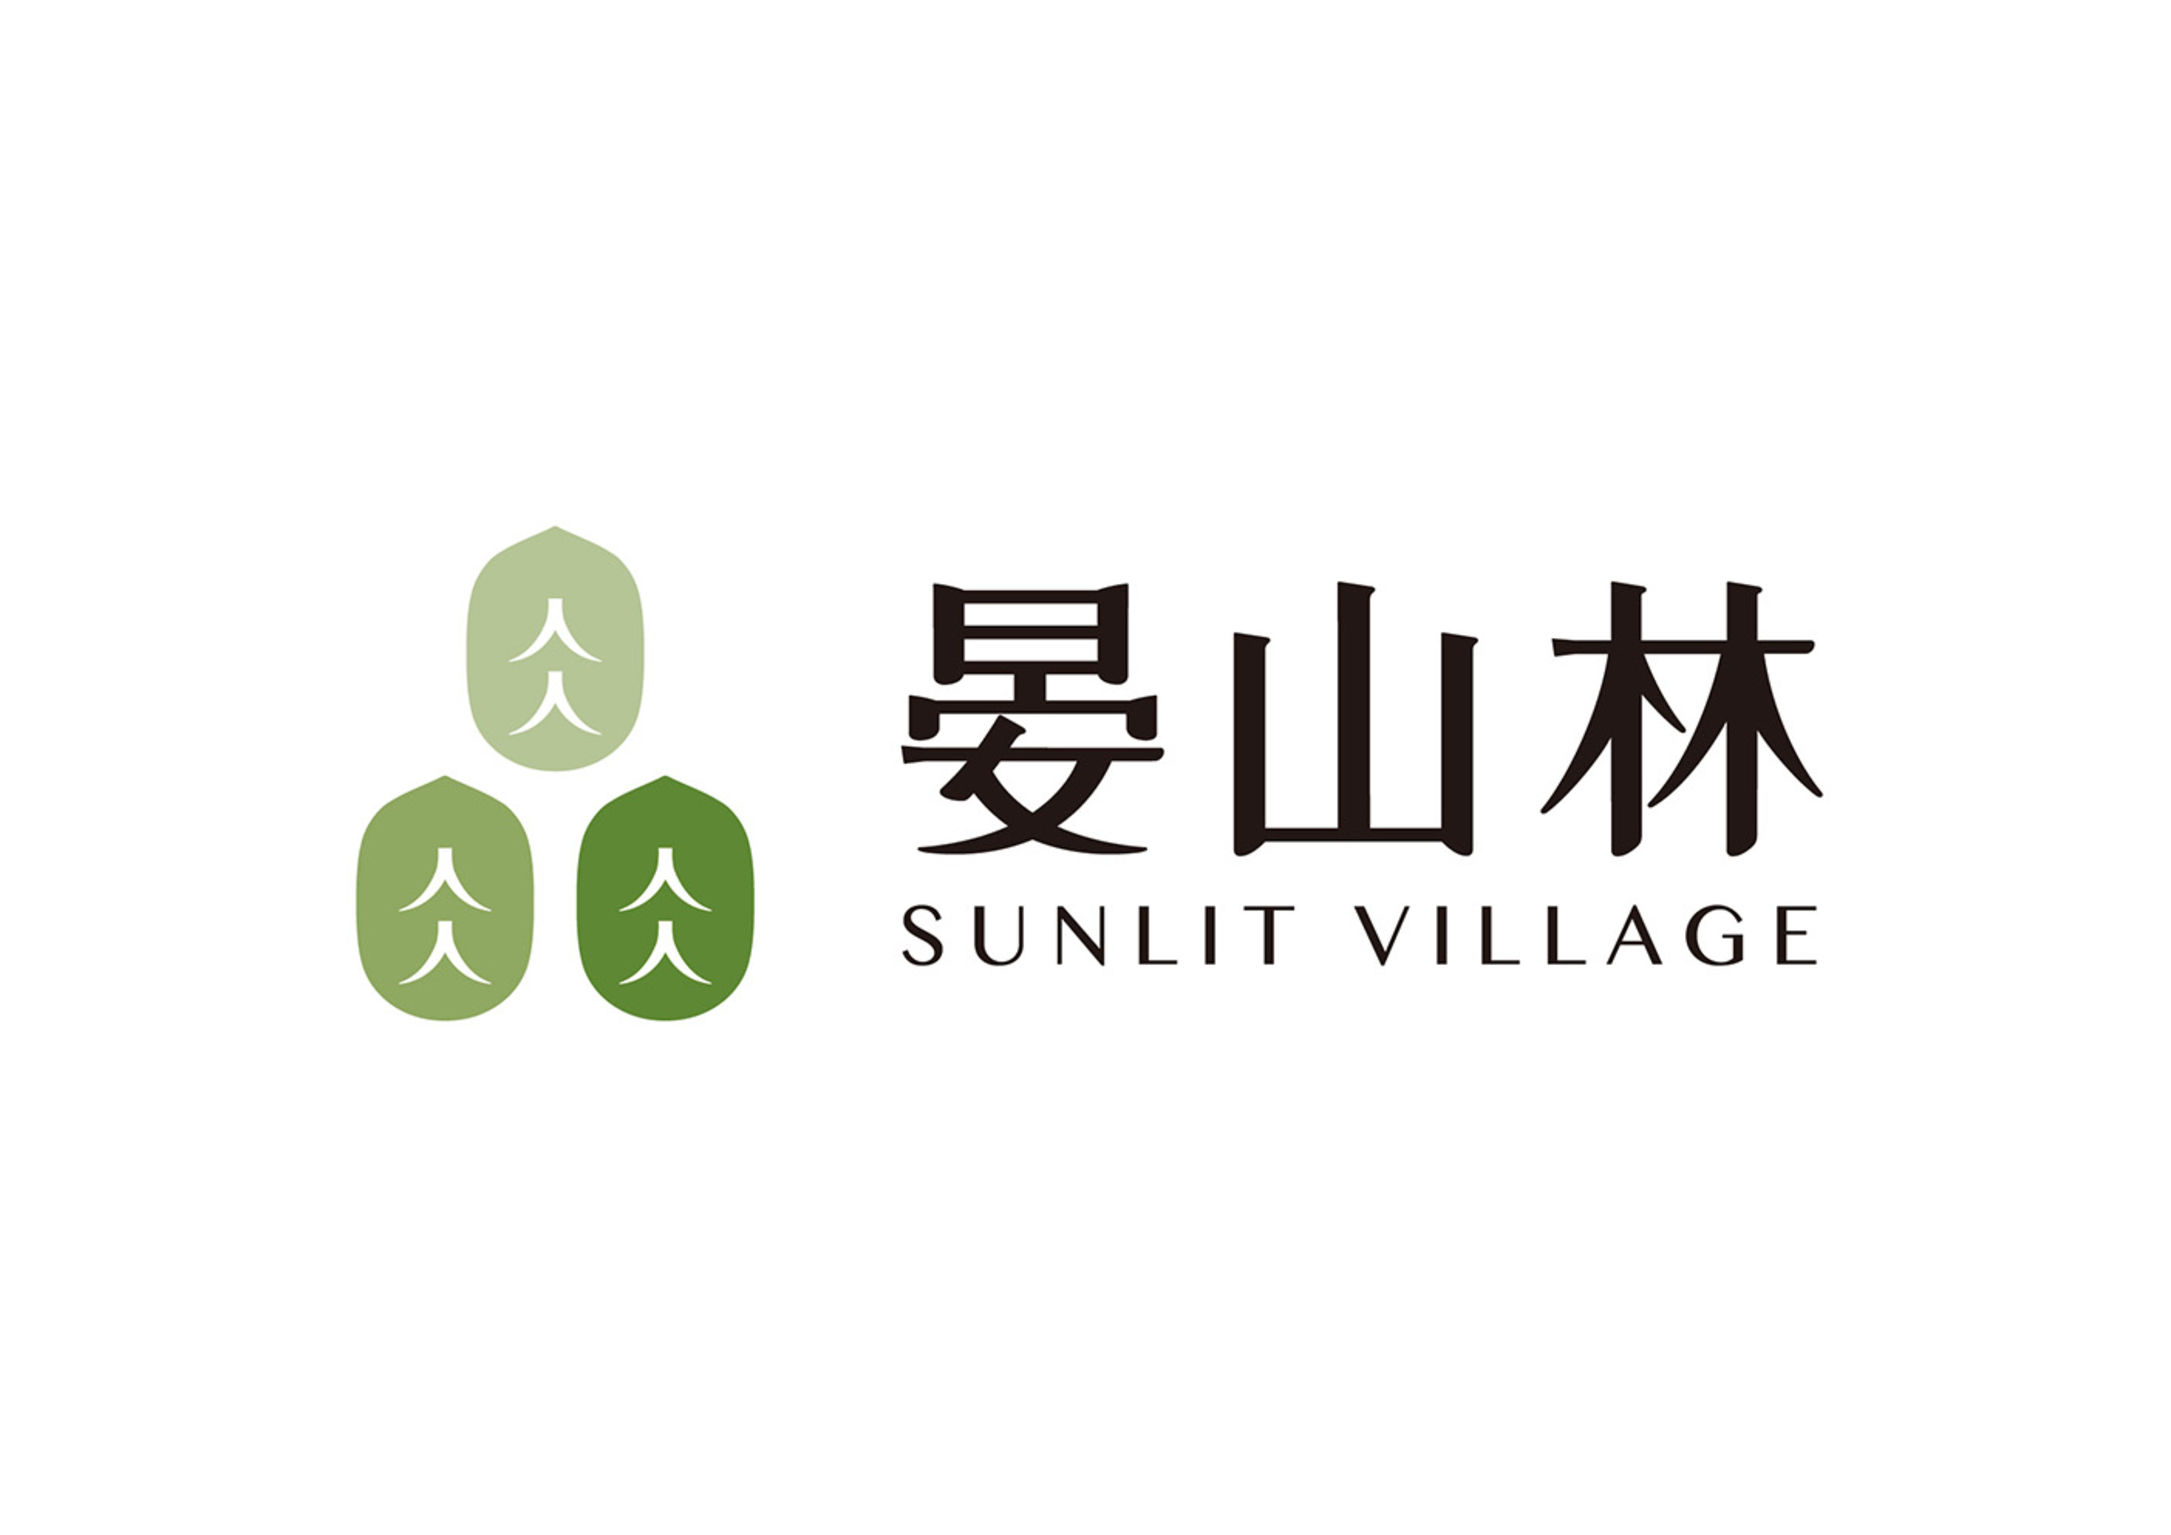 Sunlit Village